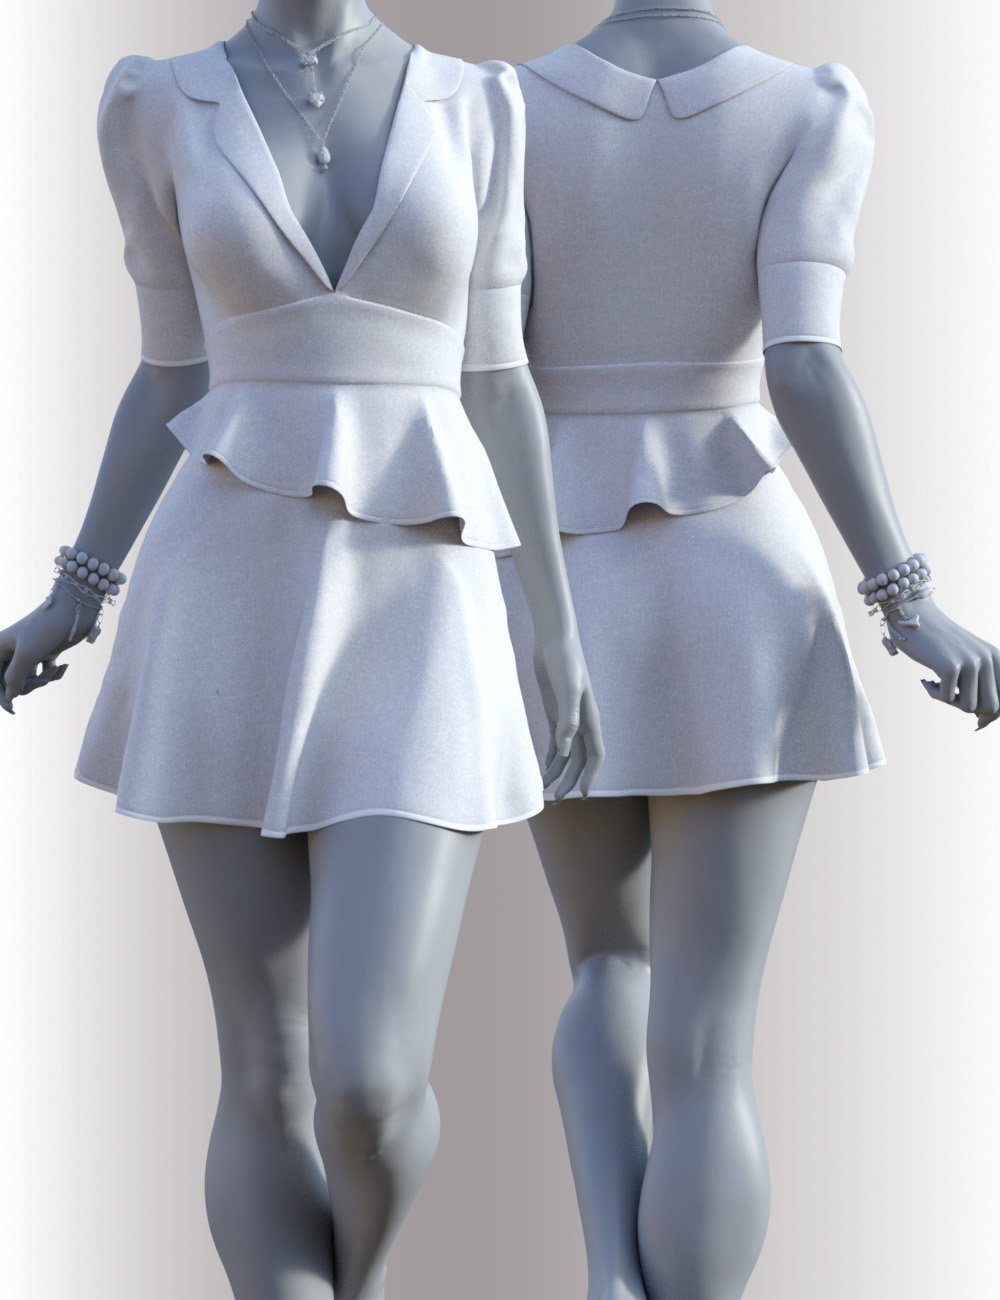 dForce Hailee Dress for Genesis 8 Female(s) by: OnnelArryn, 3D Models by Daz 3D